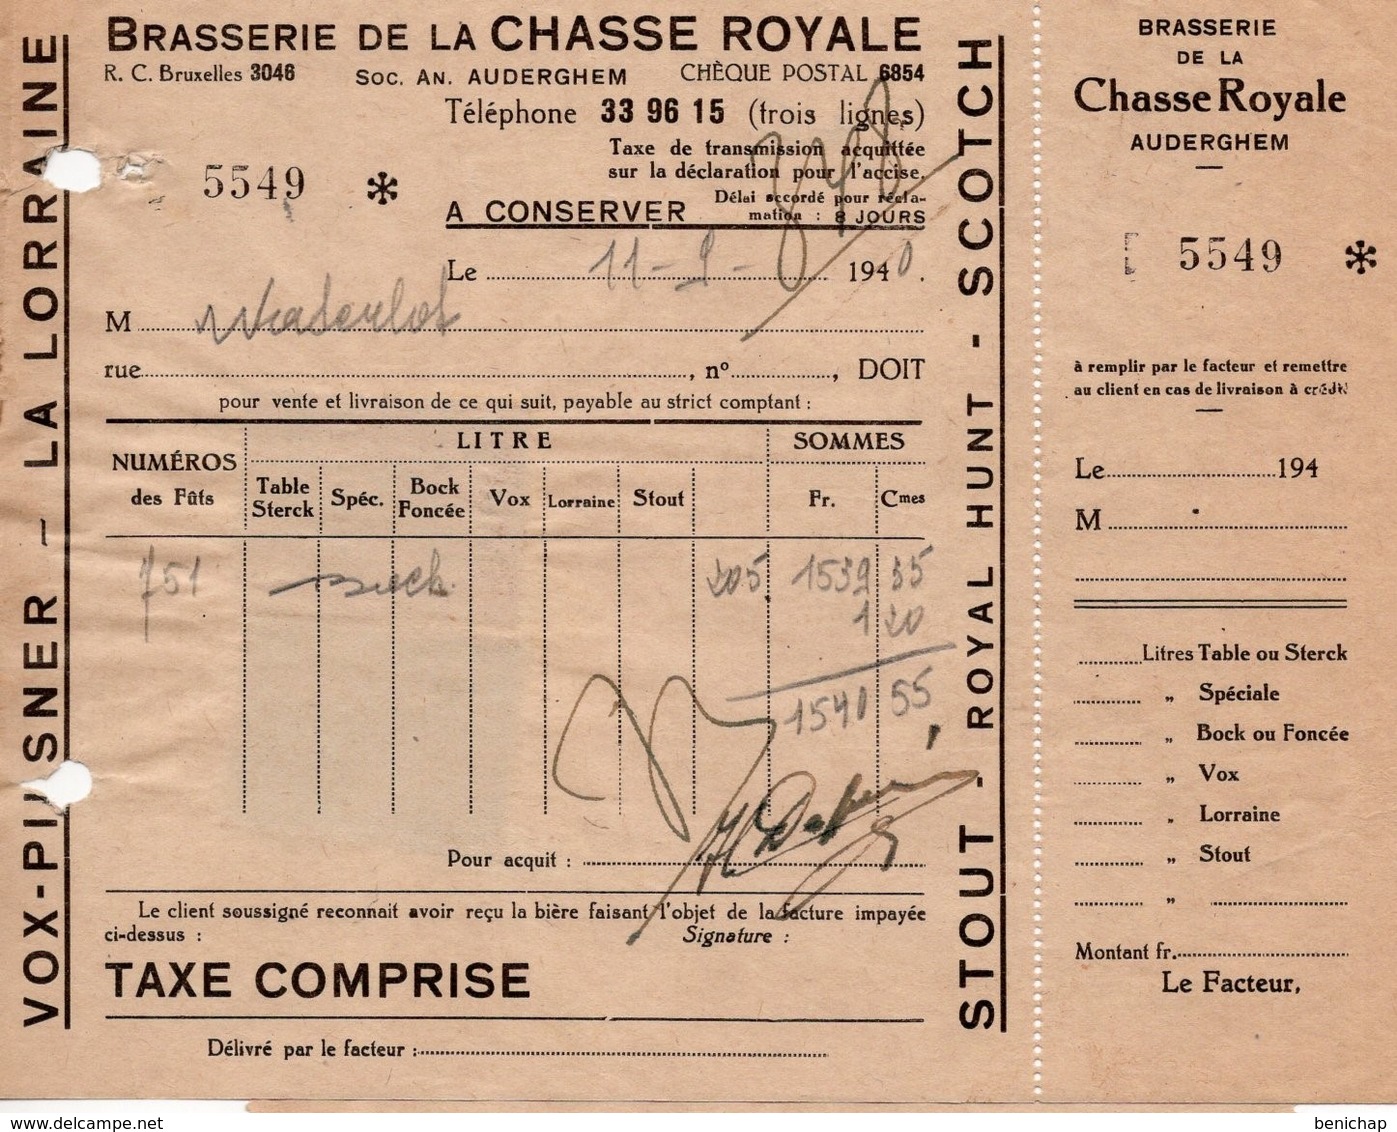 BRASSERIE DE LA CHASSE ROYALE - AUDERGHEM - VOX- PILSENER - LA LORRAINE - STOUT - ROYAL HUNT - SCOTCH -7 SEPTEMBRE 1940 - Alimentaire